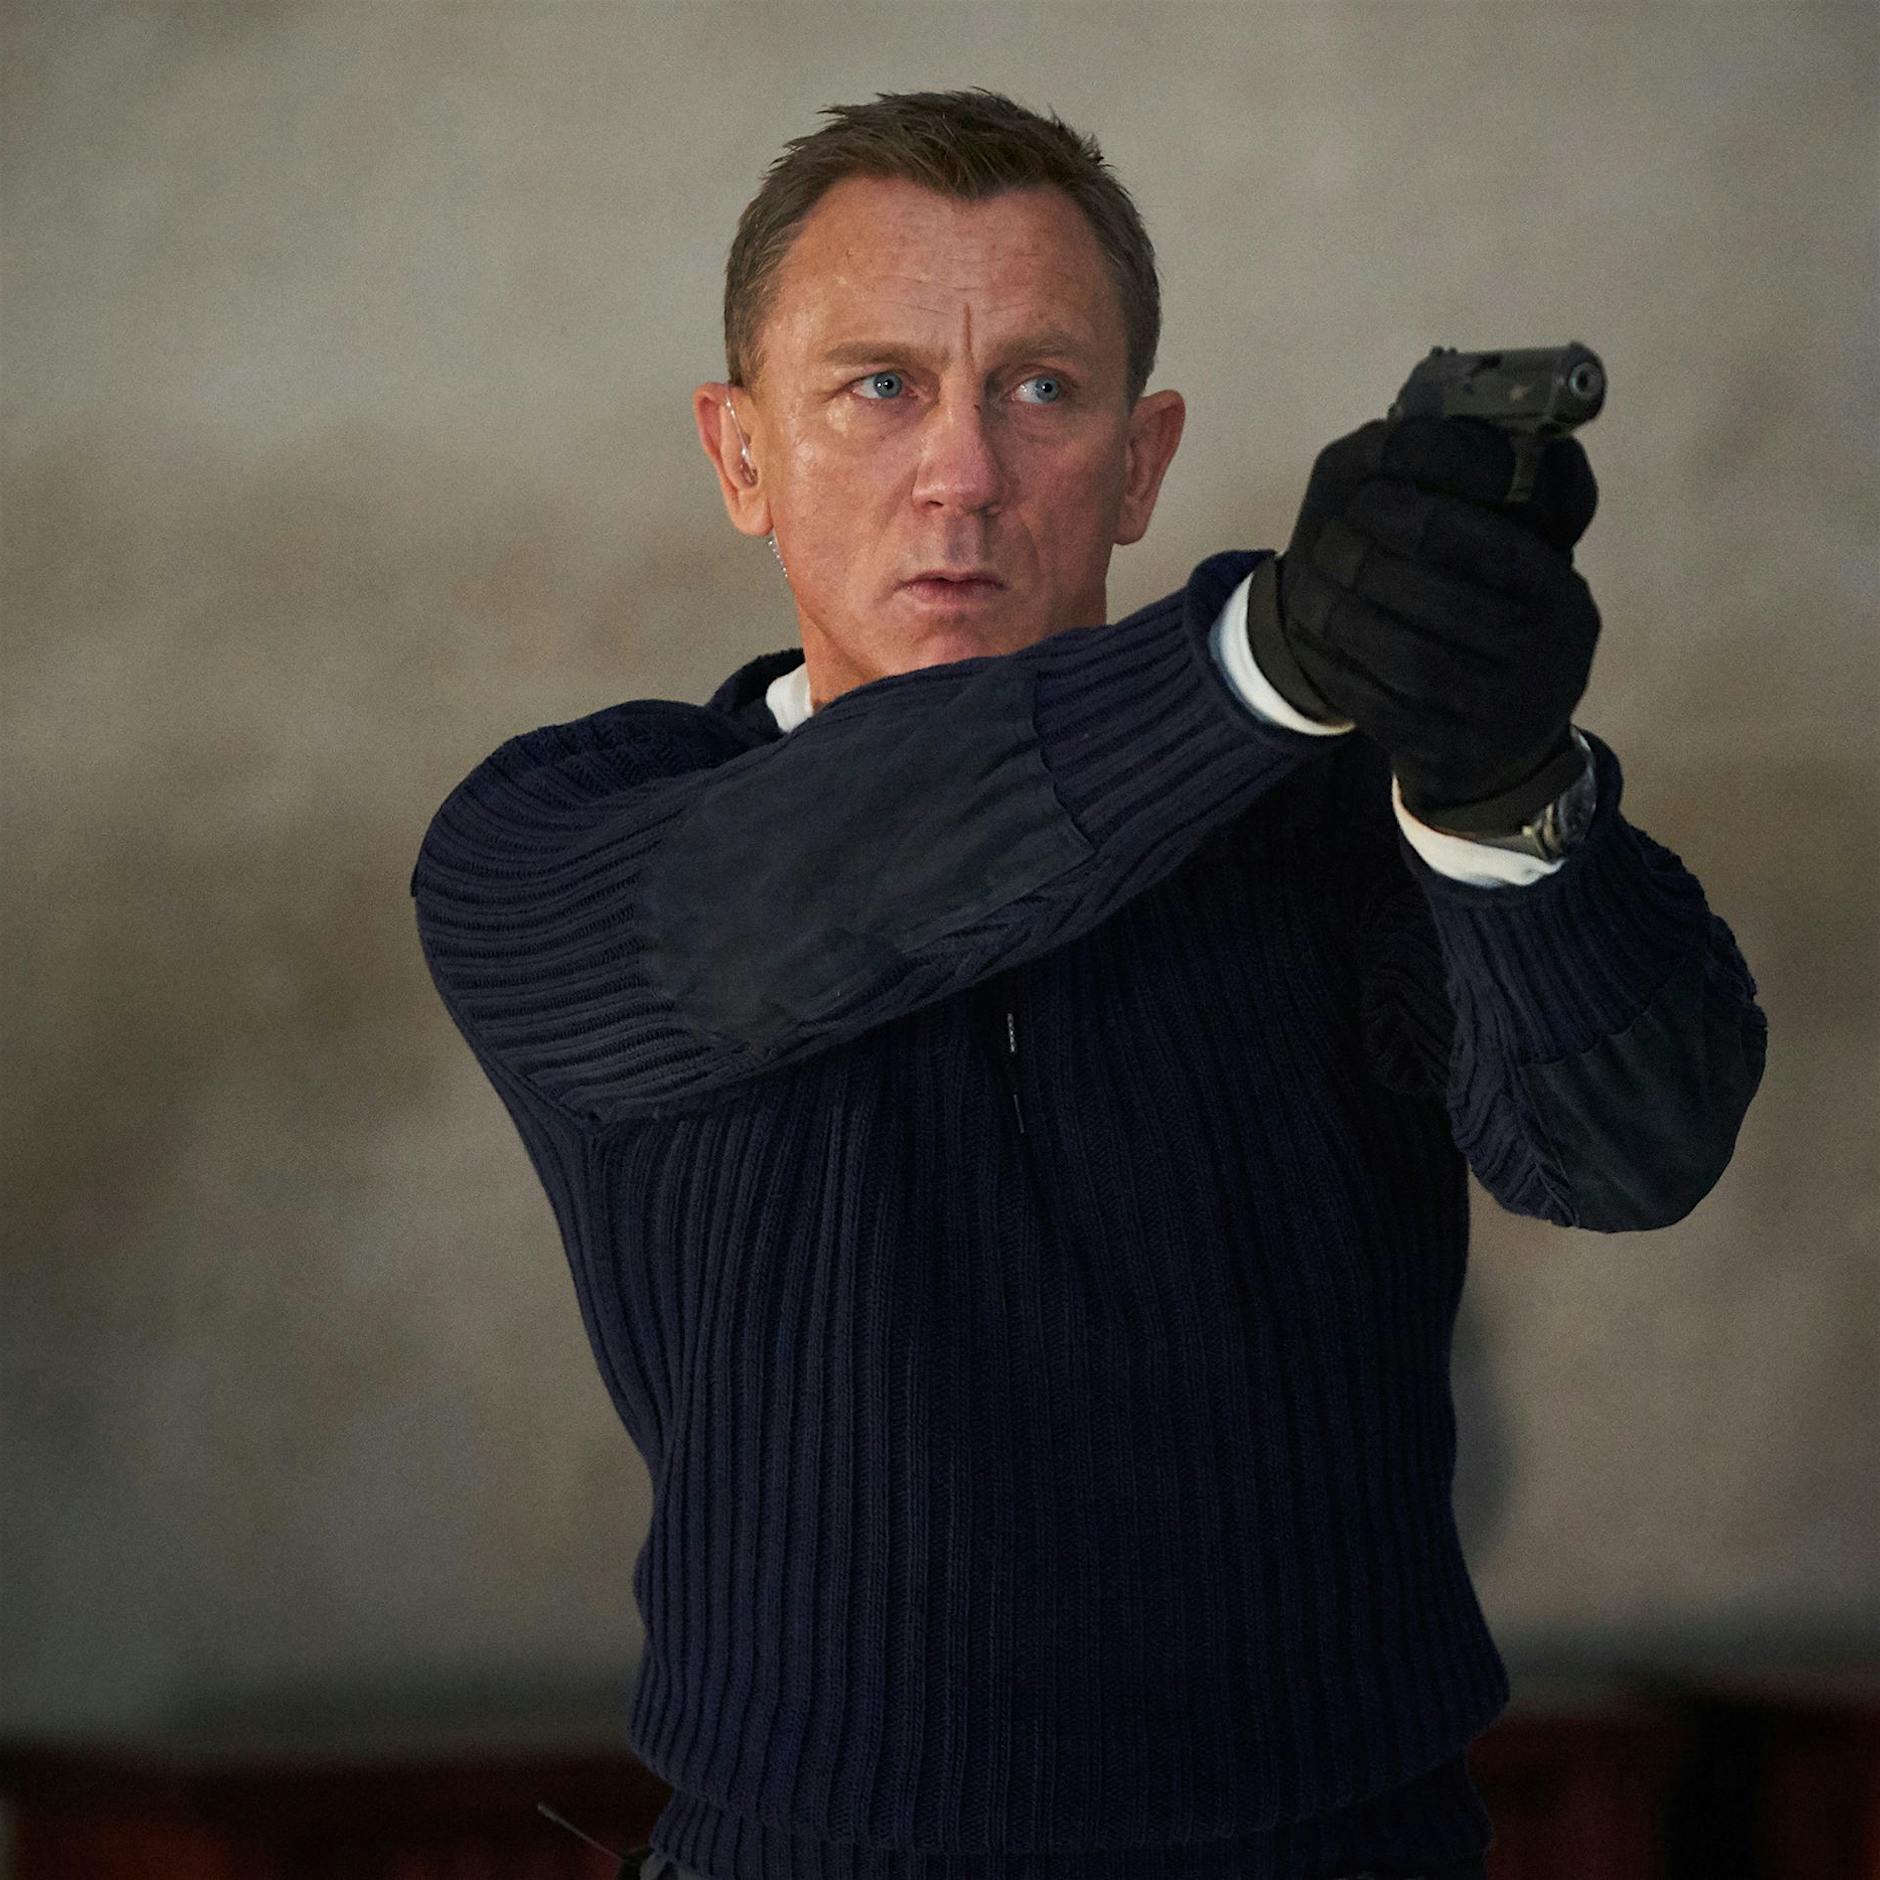 Image - Daniel Craig: „Den nächsten James Bond sollte keine Frau spielen“